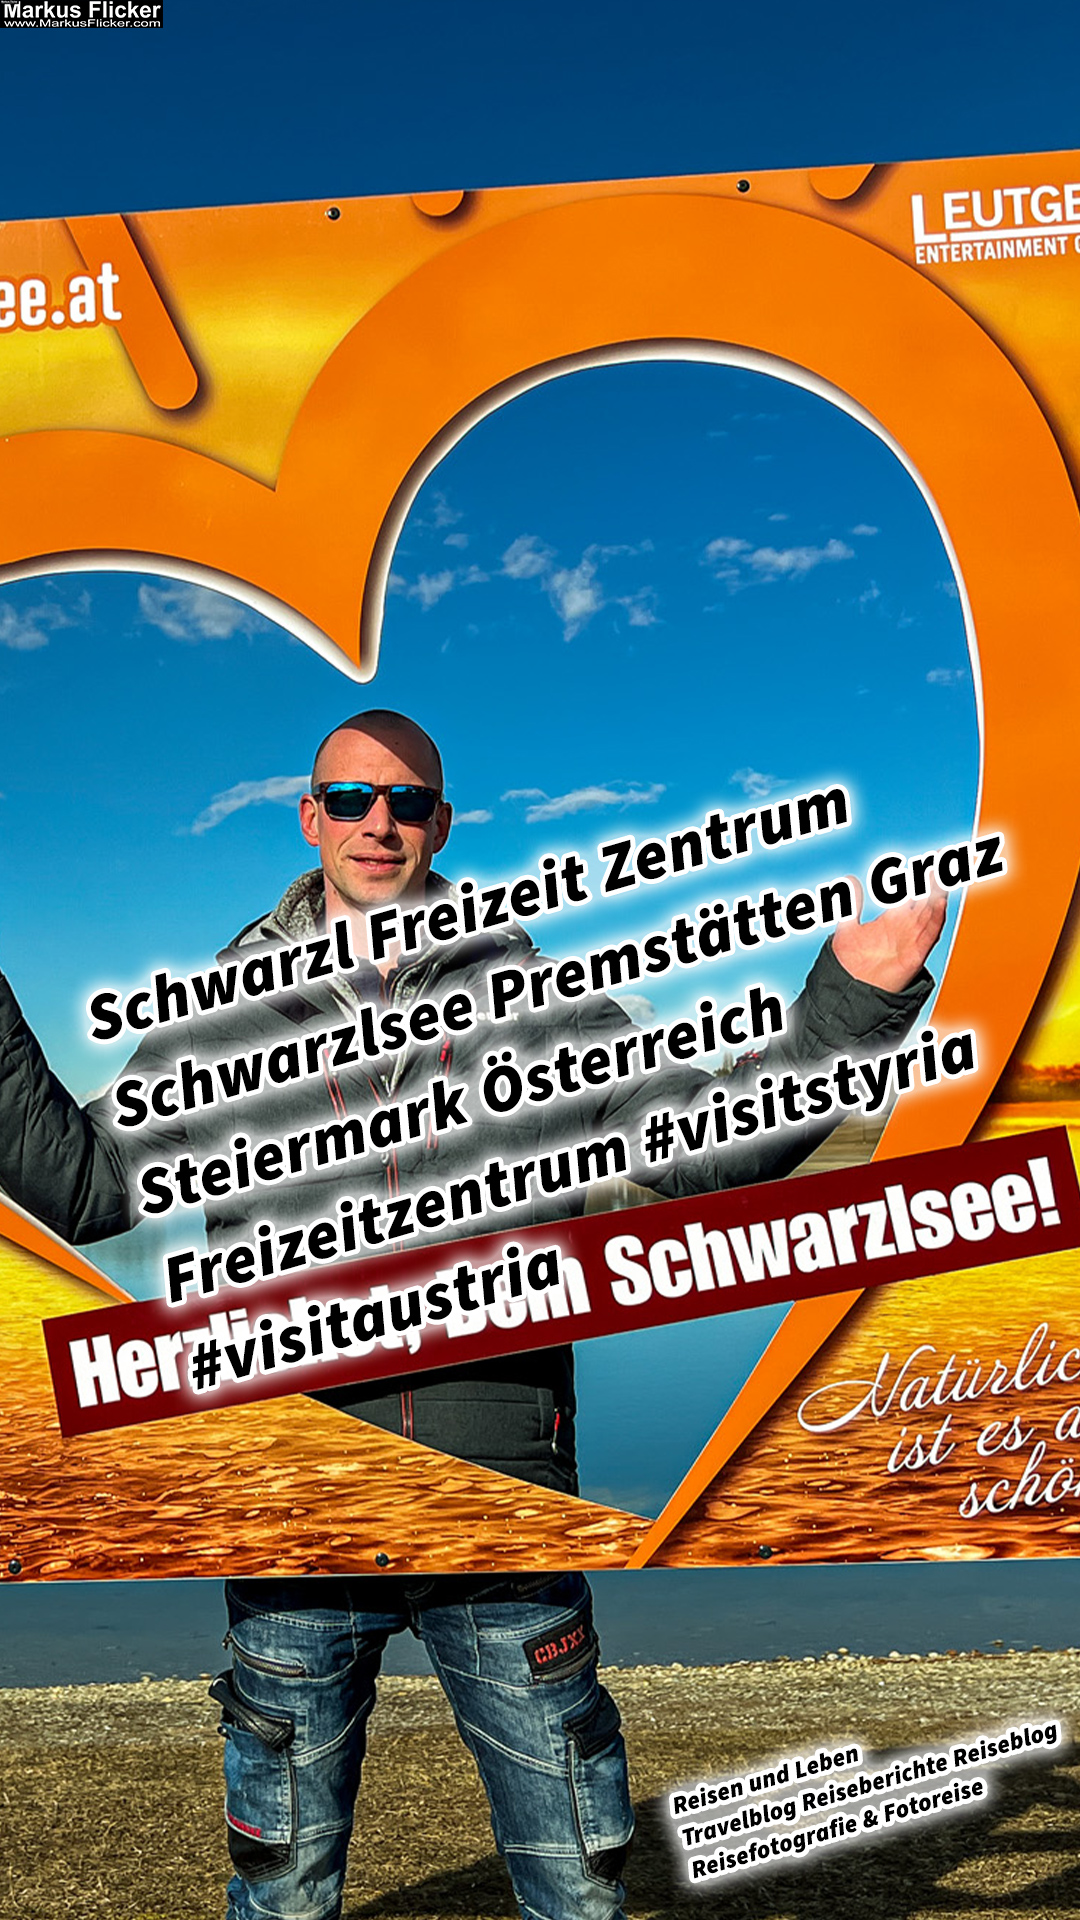 Schwarzl Freizeit Zentrum Schwarzlsee Premstätten Graz Steiermark Österreich Freizeitzentrum #visitstyria #visitaustria